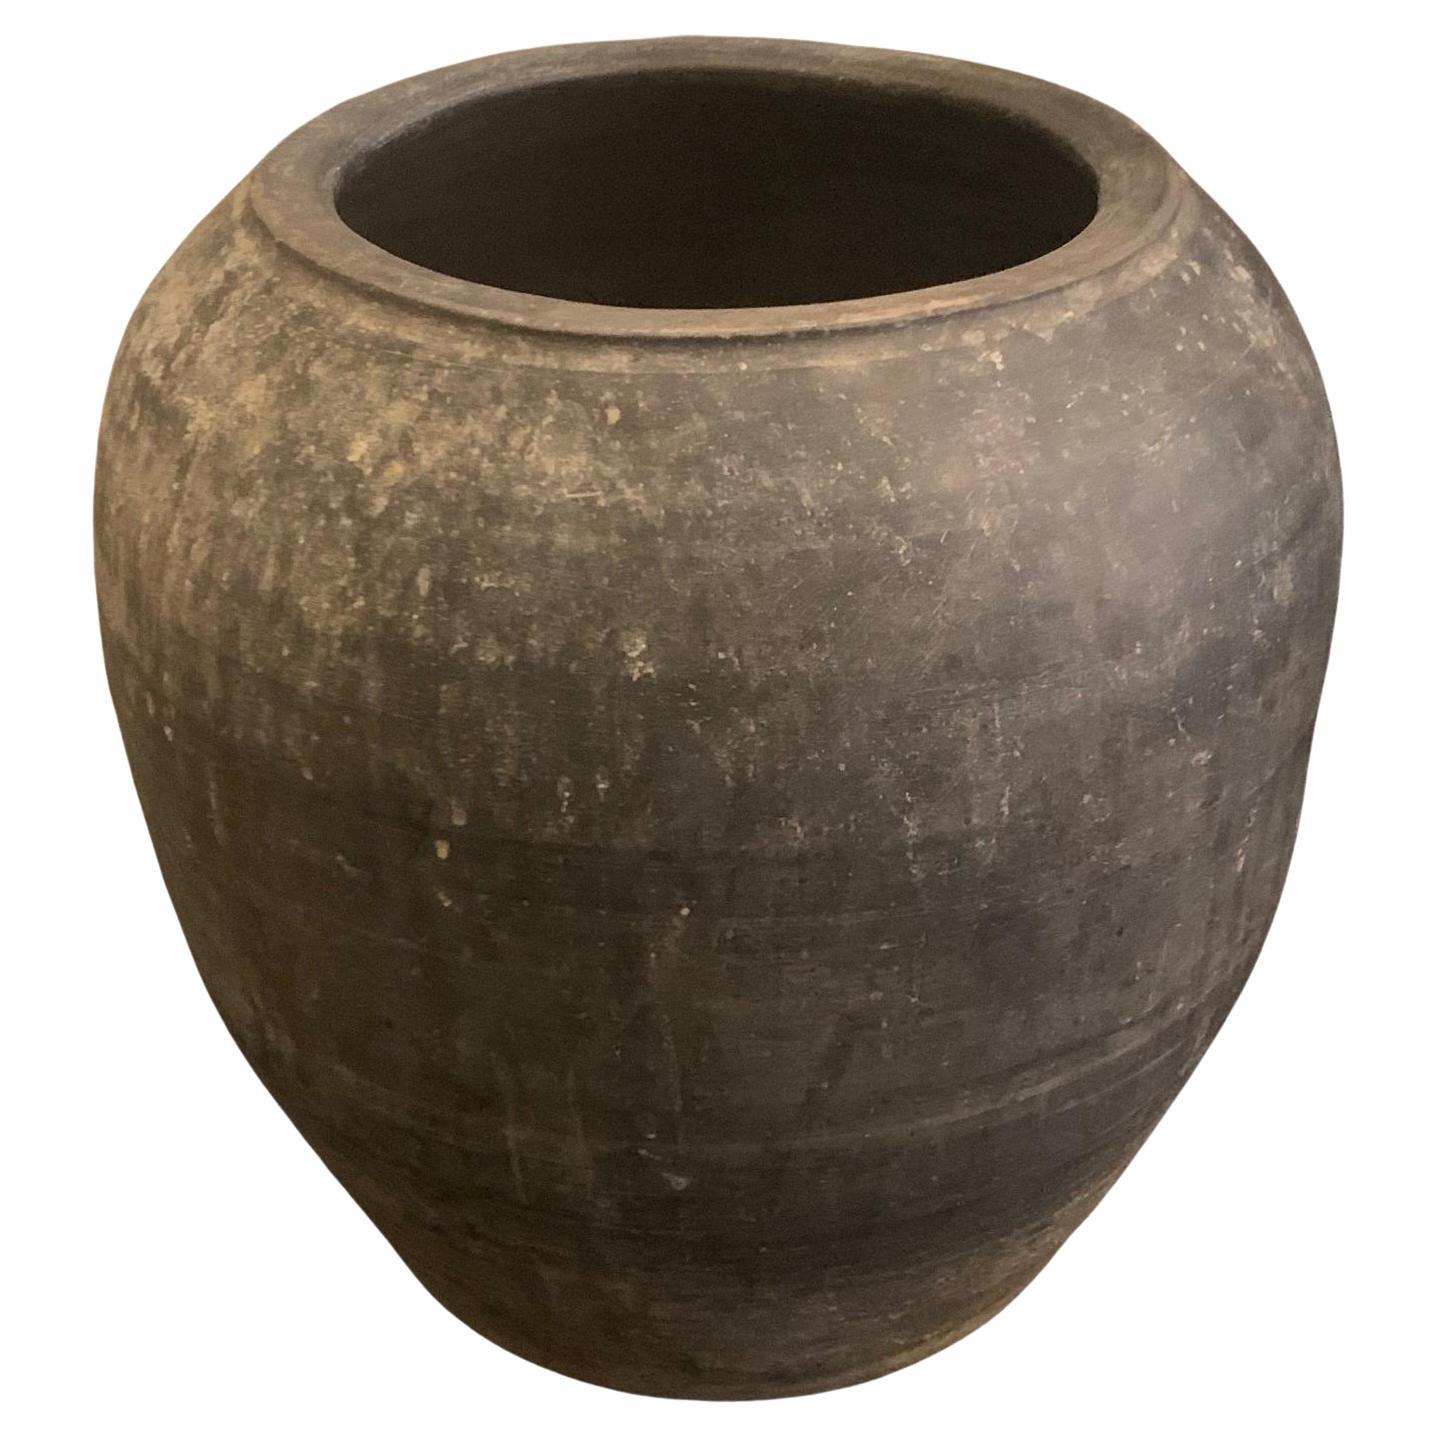 Grand pot en terre cuite vieillie gris anthracite, Chine, 20e siècle